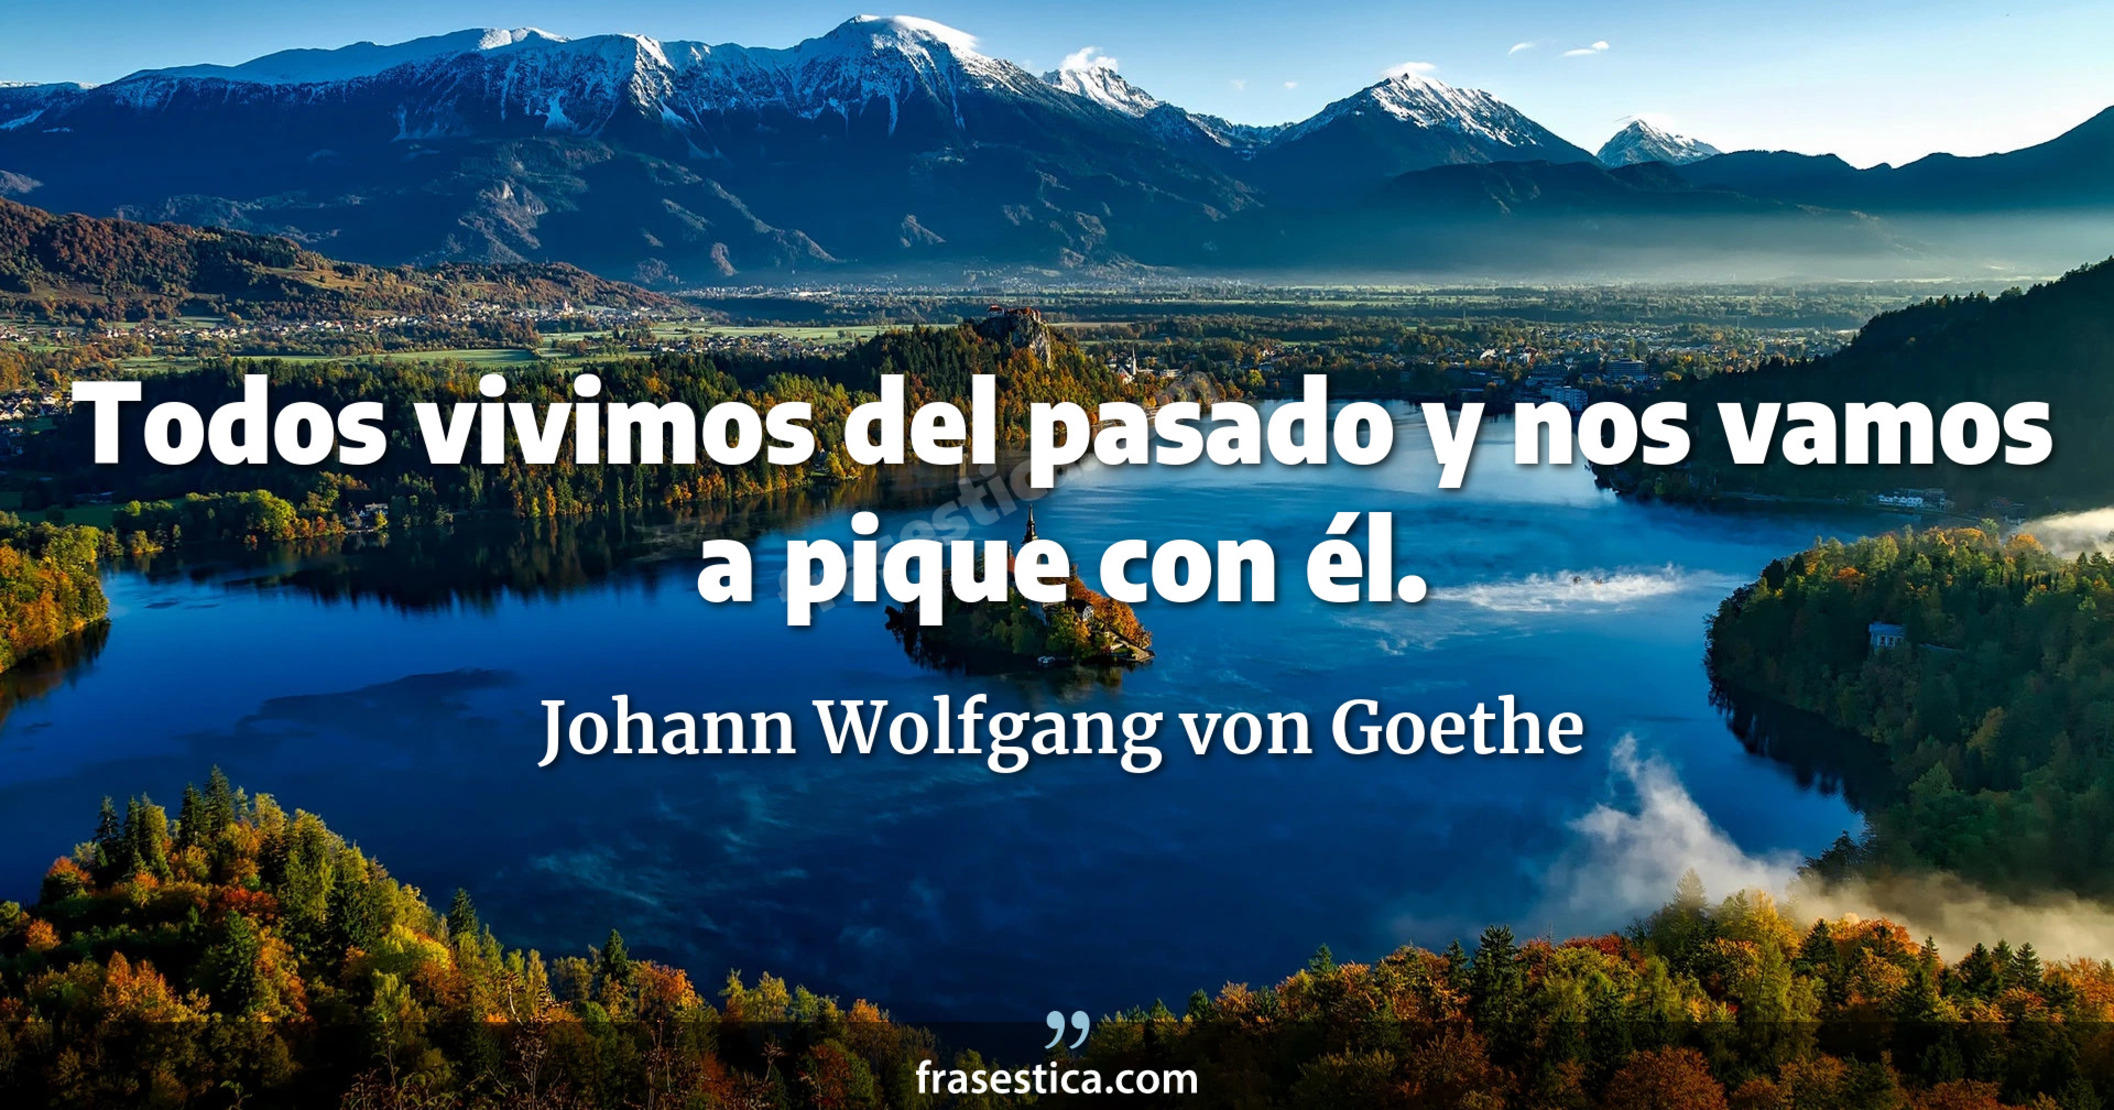 Todos vivimos del pasado y nos vamos a pique con él. - Johann Wolfgang von Goethe